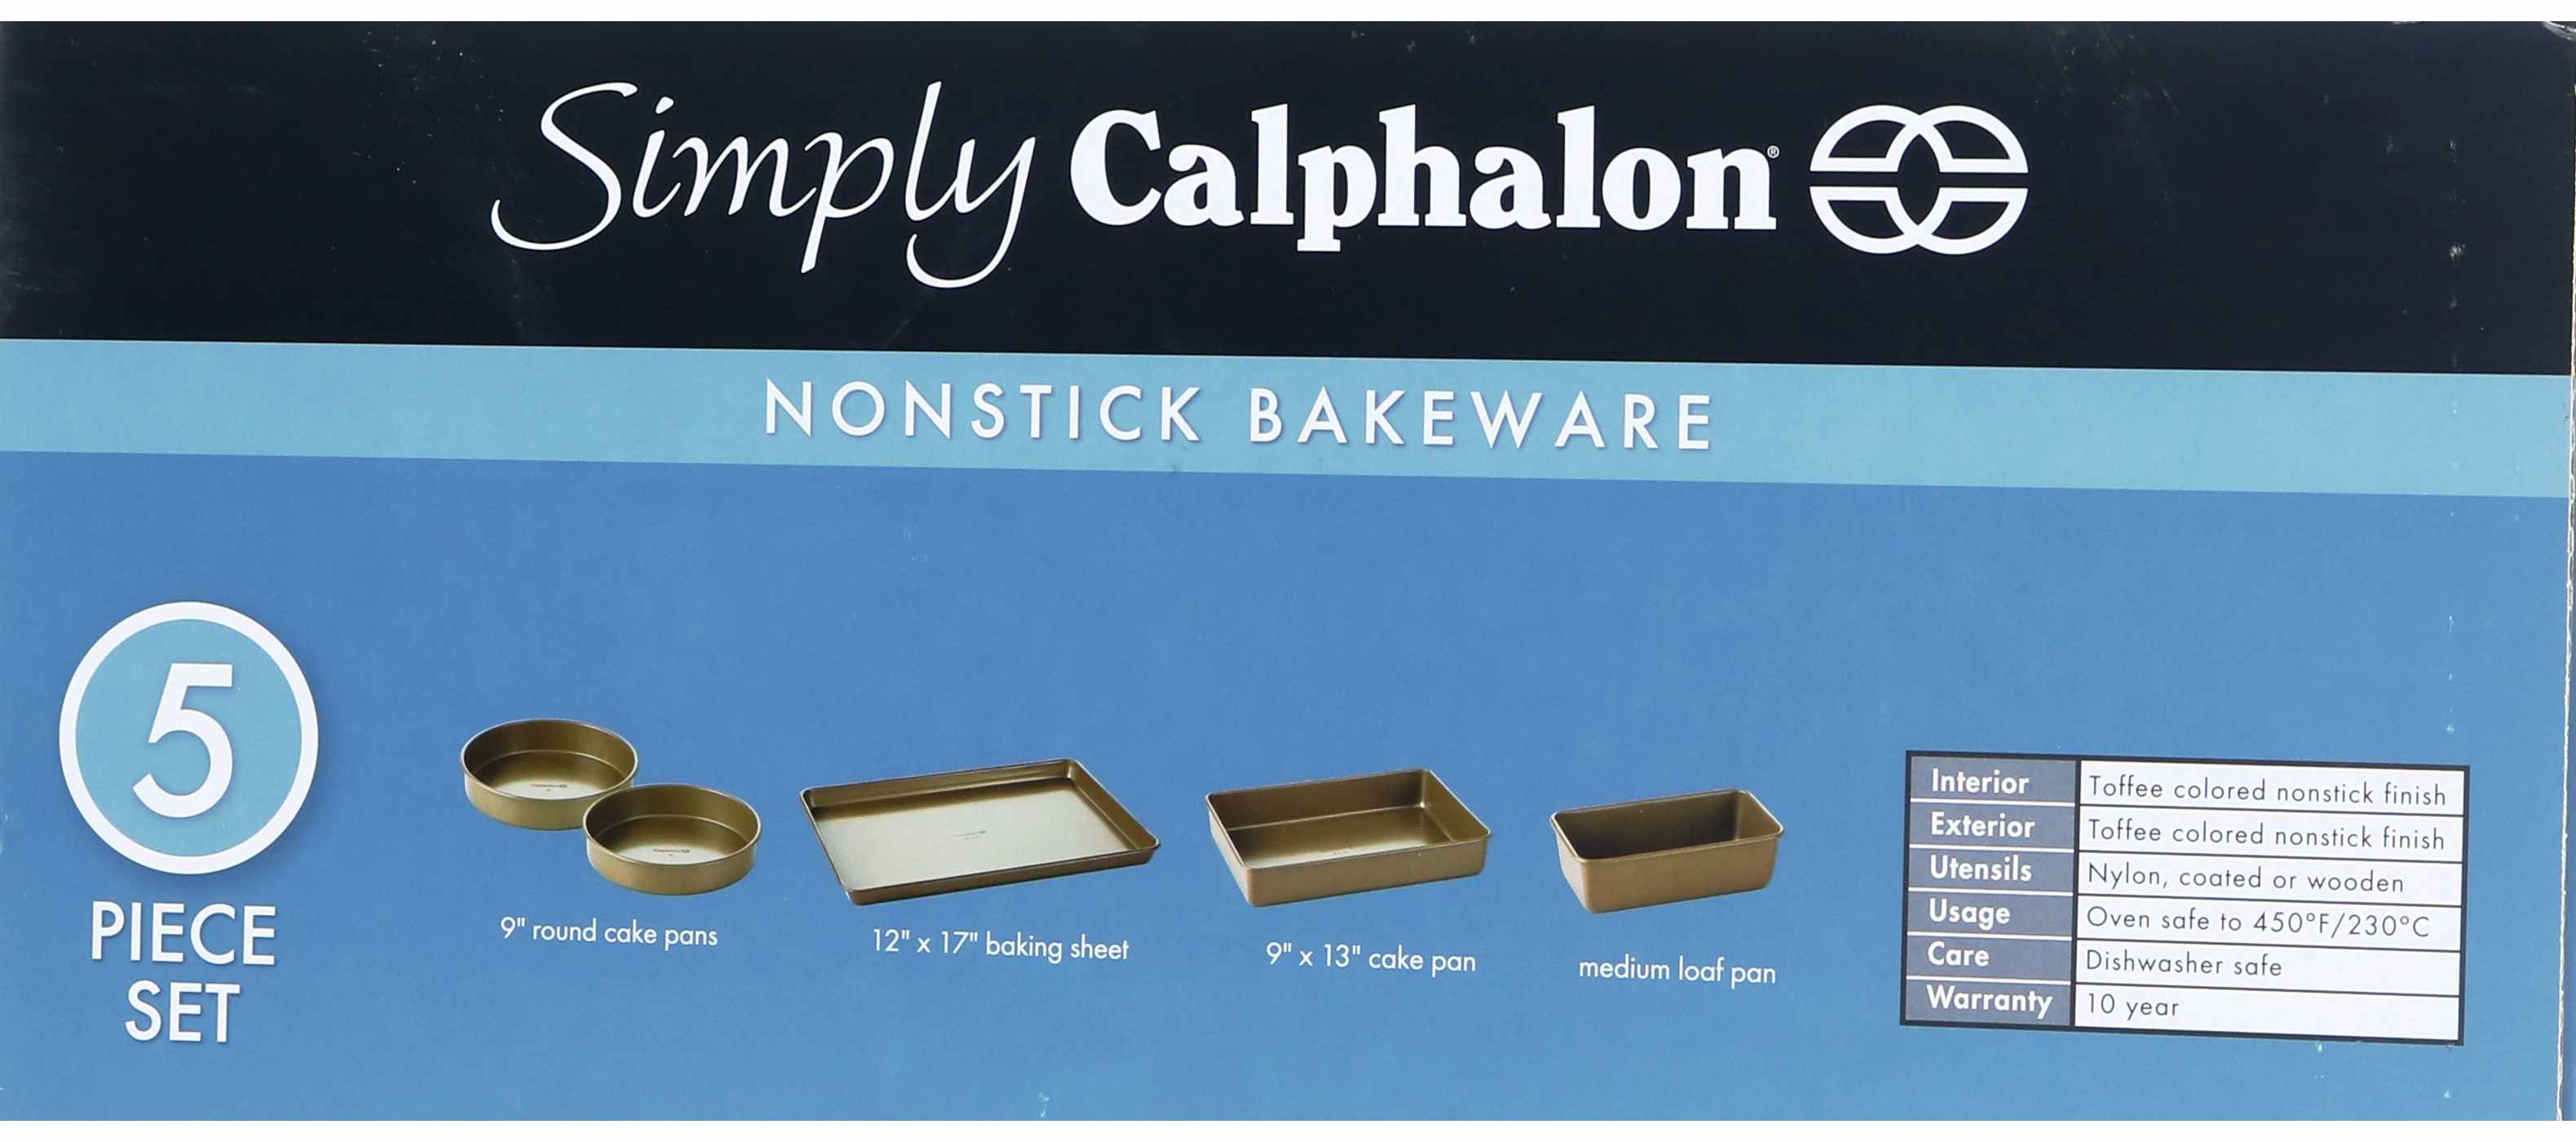 Calphalon Nonstick Bakeware 2-Piece Baking Sheet Set